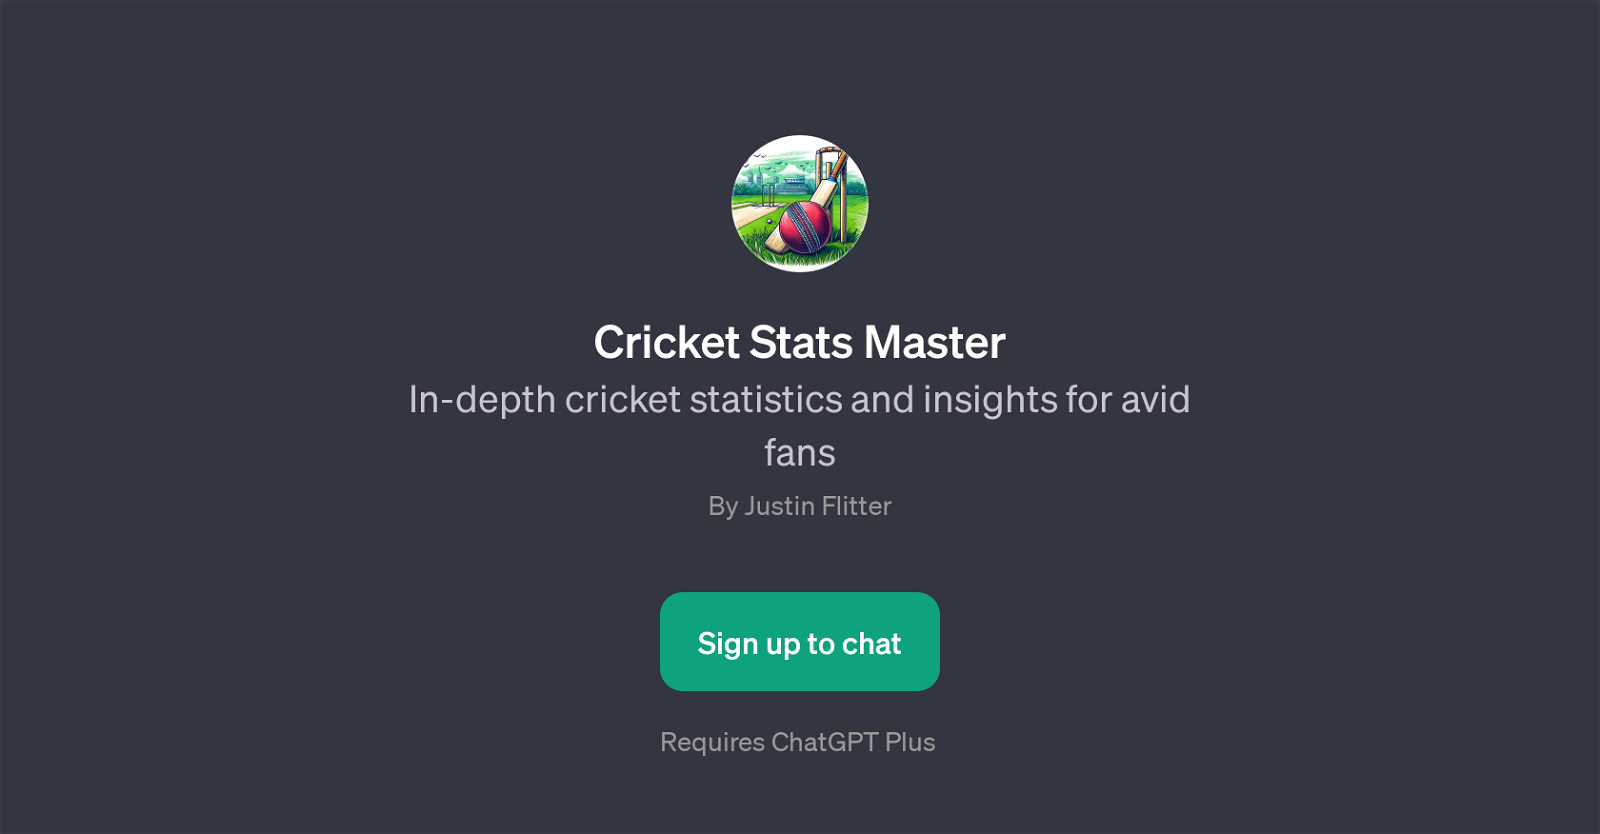 Cricket Stats Master website